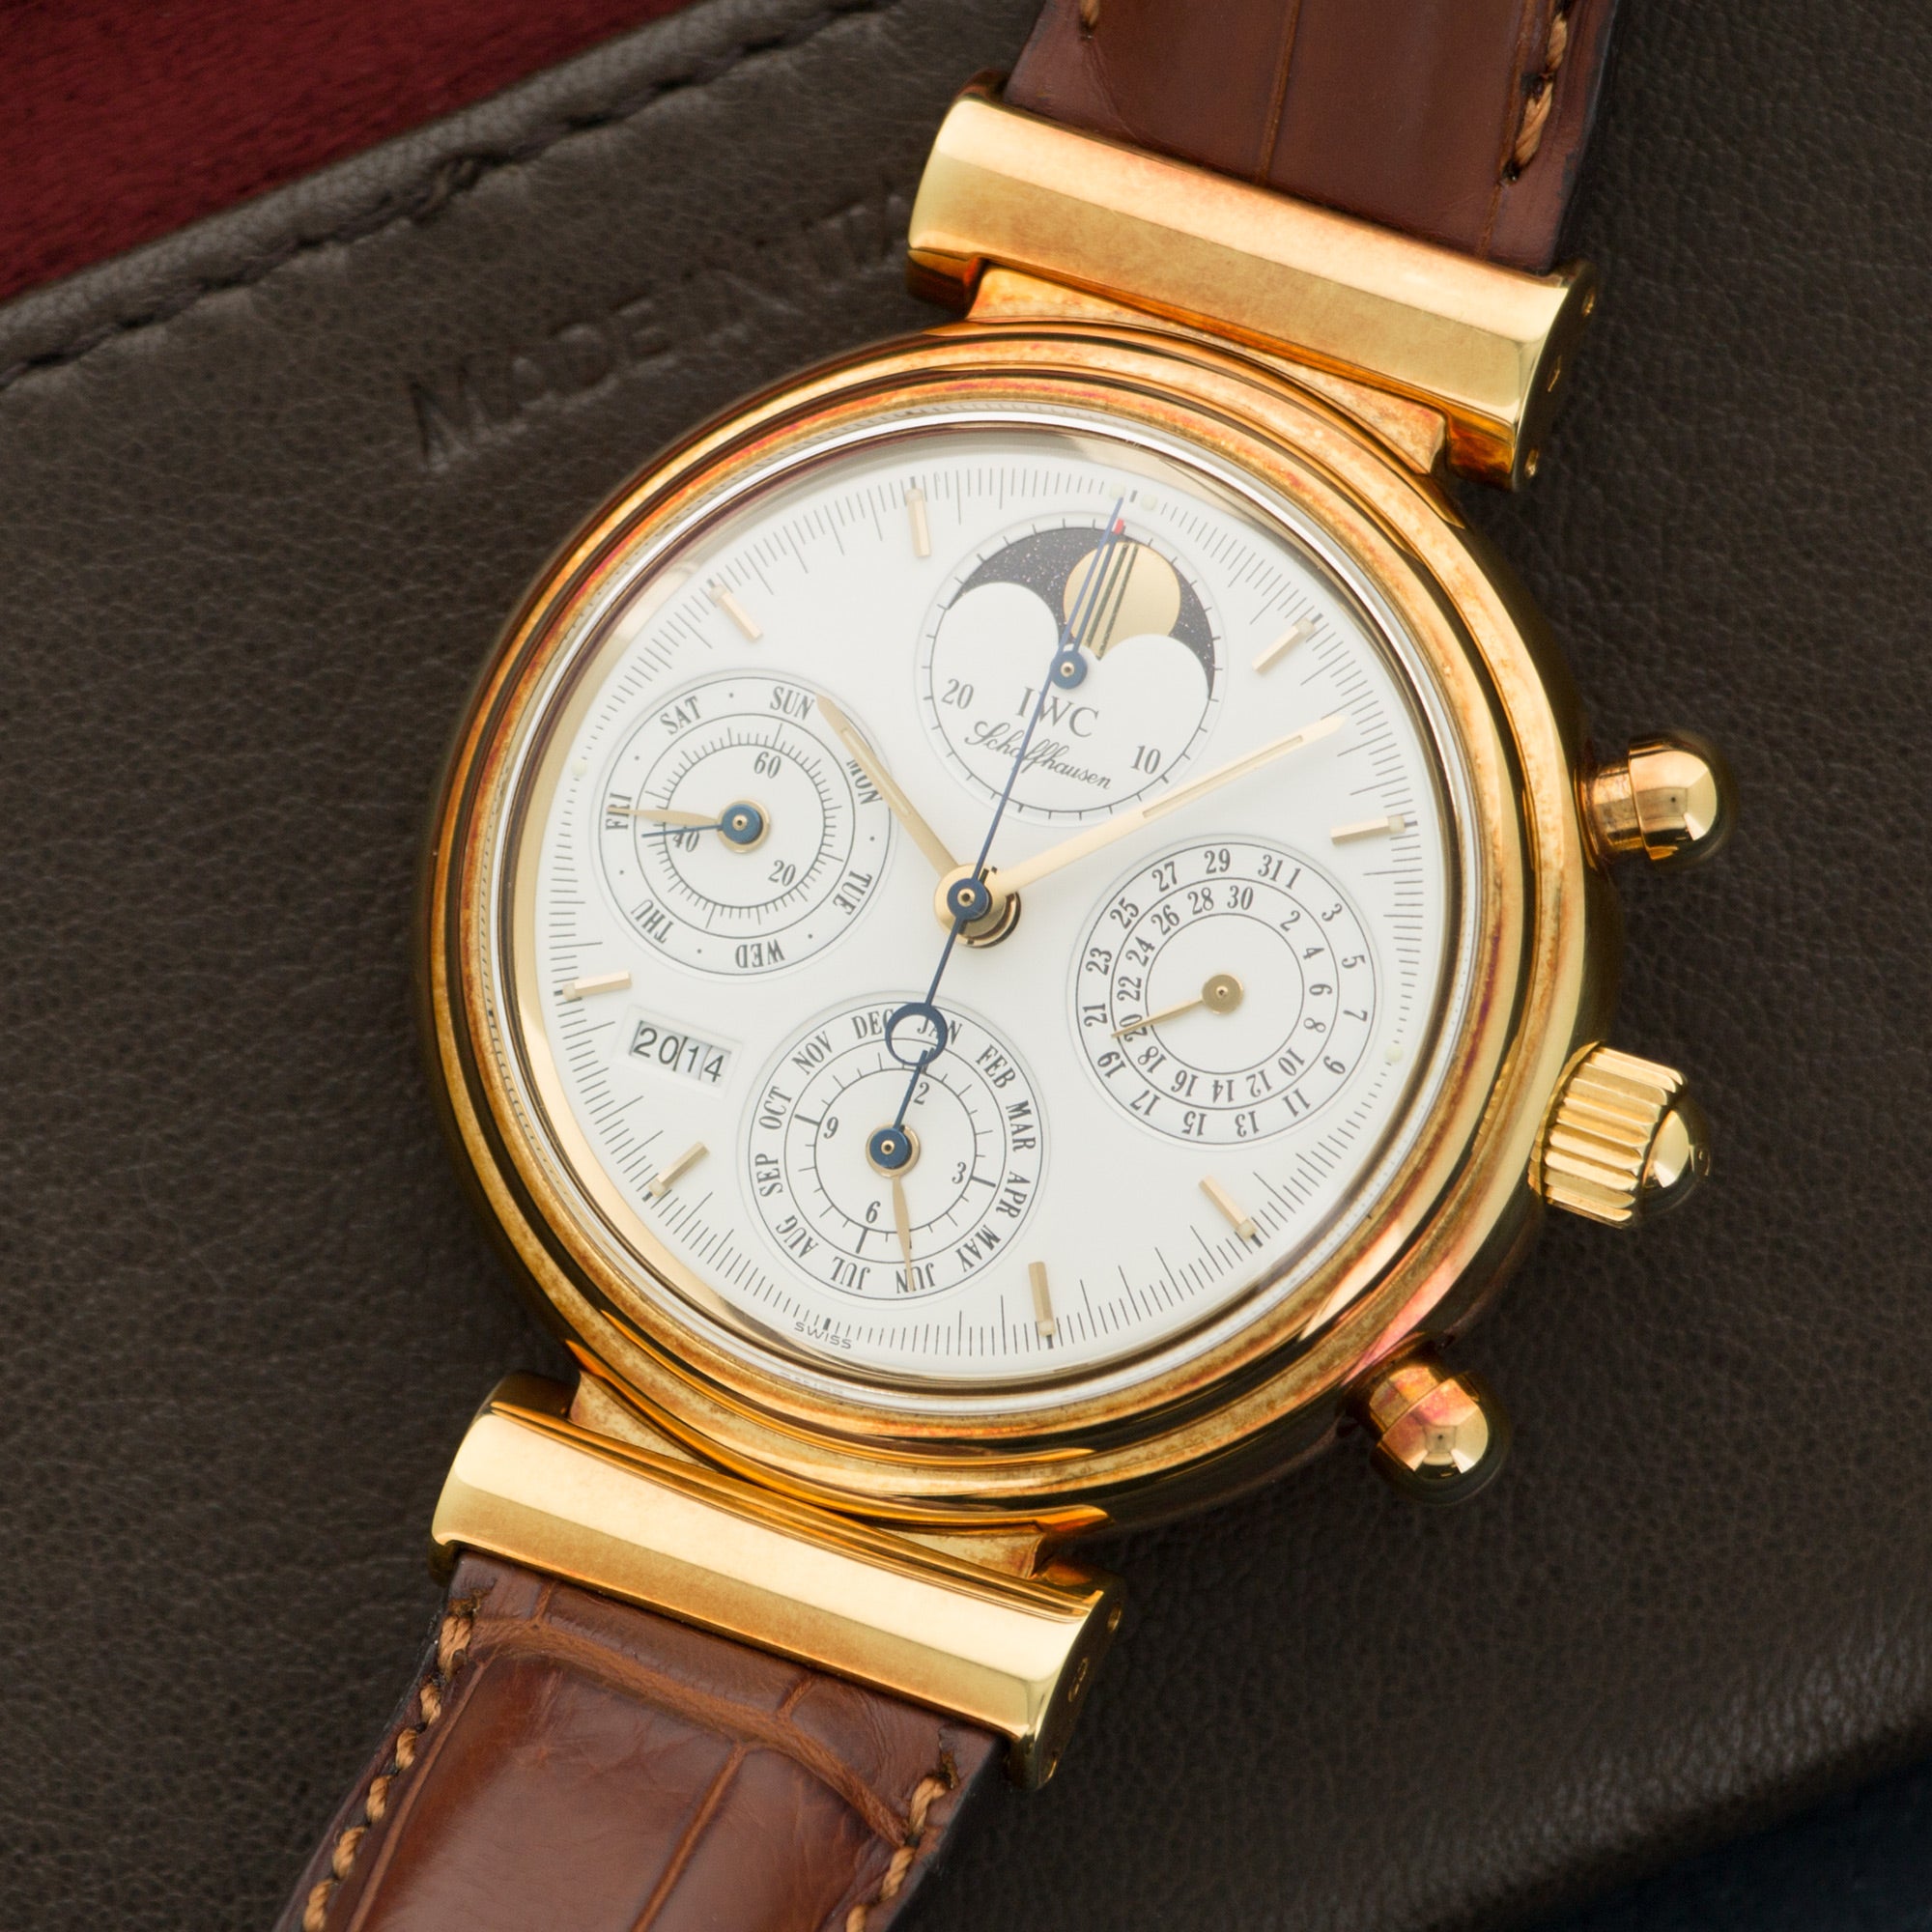 IWC - IWC Yellow Gold Da Vinci Perpetual Calendar Chrono Watch - The Keystone Watches